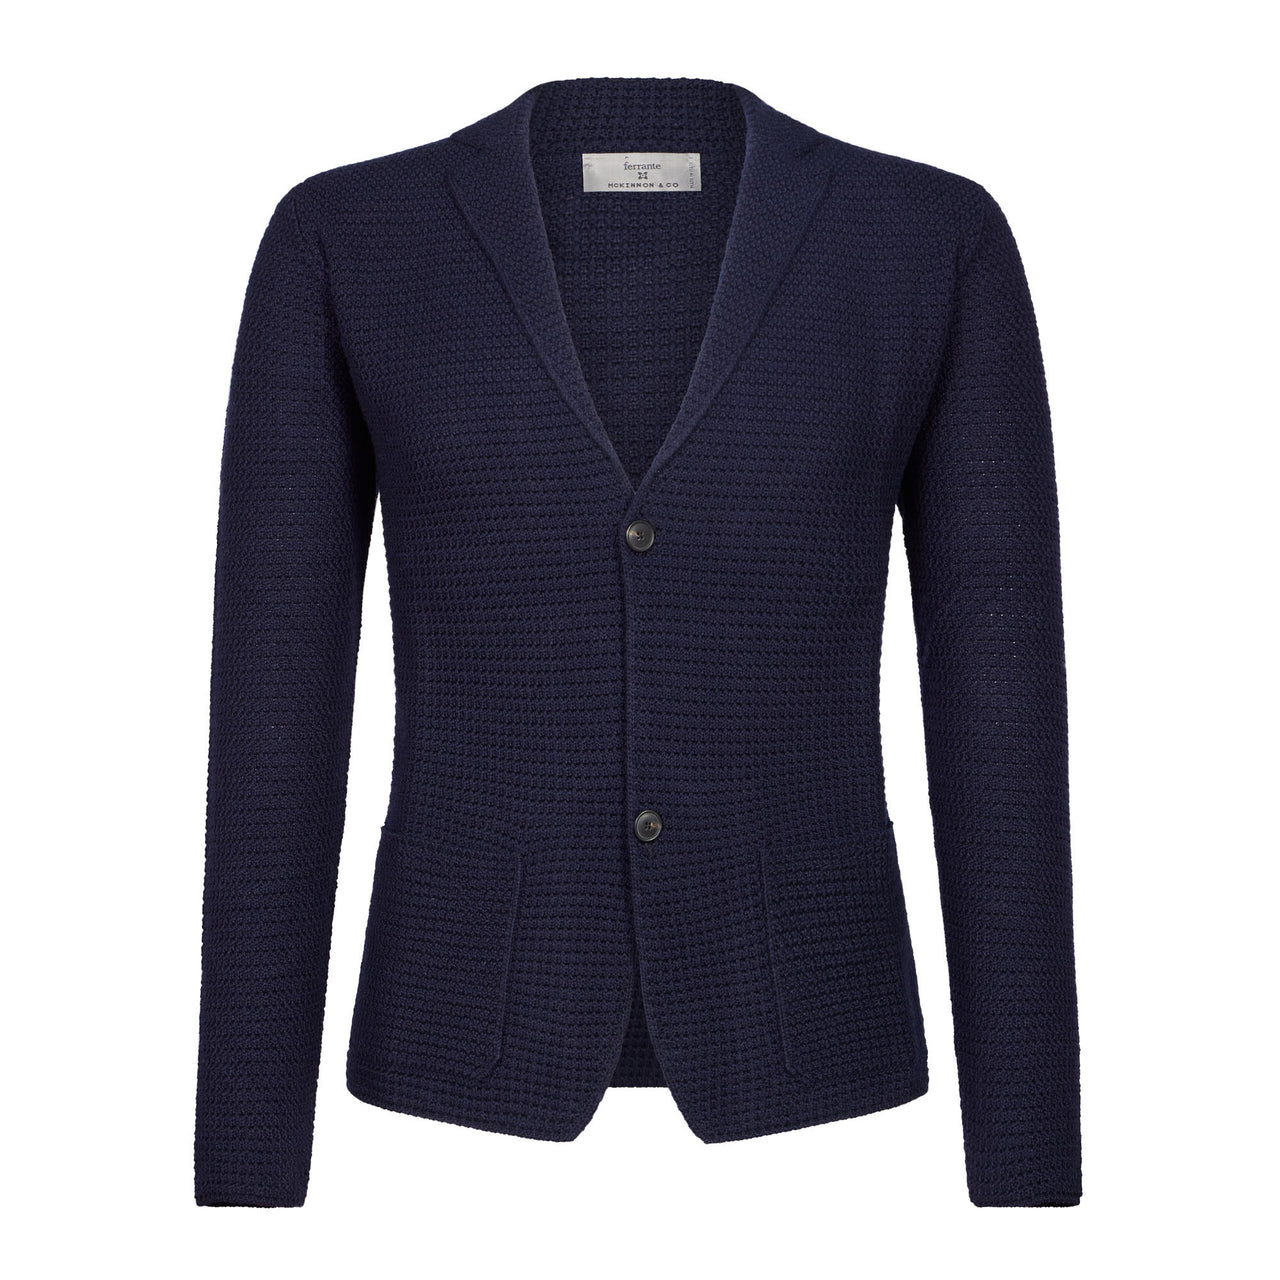 MCKINNON & CO X FERRANTE Buttoned Wool Cardigan BLUE/NAVY